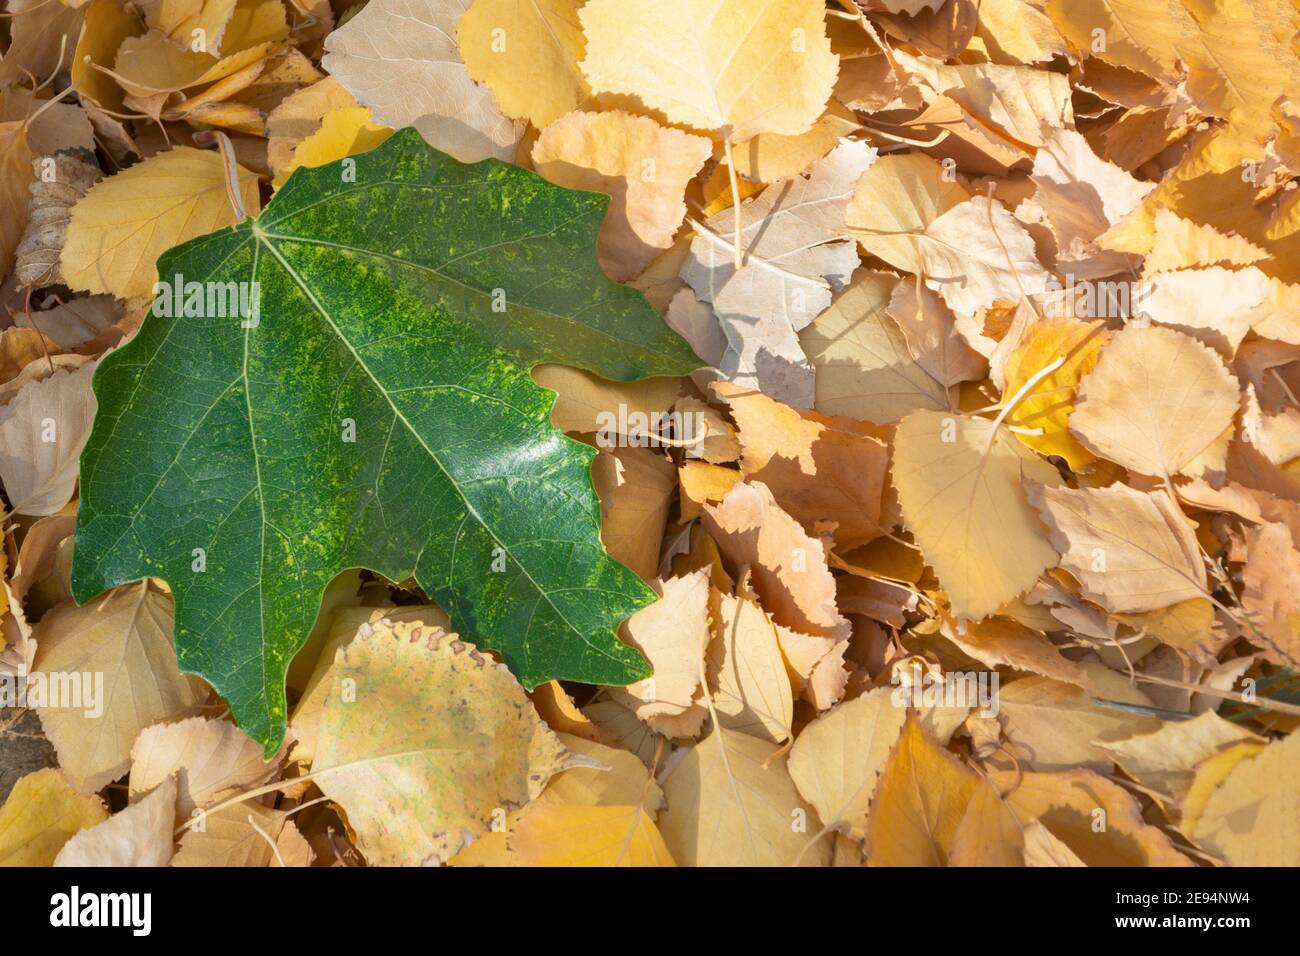 La hoja de arce verde descansa sobre hojas pequeñas y amarillas. Concepto de otoño, cambio de estaciones. Espacio de copia, enfoque selectivo, primer plano. Foto de stock